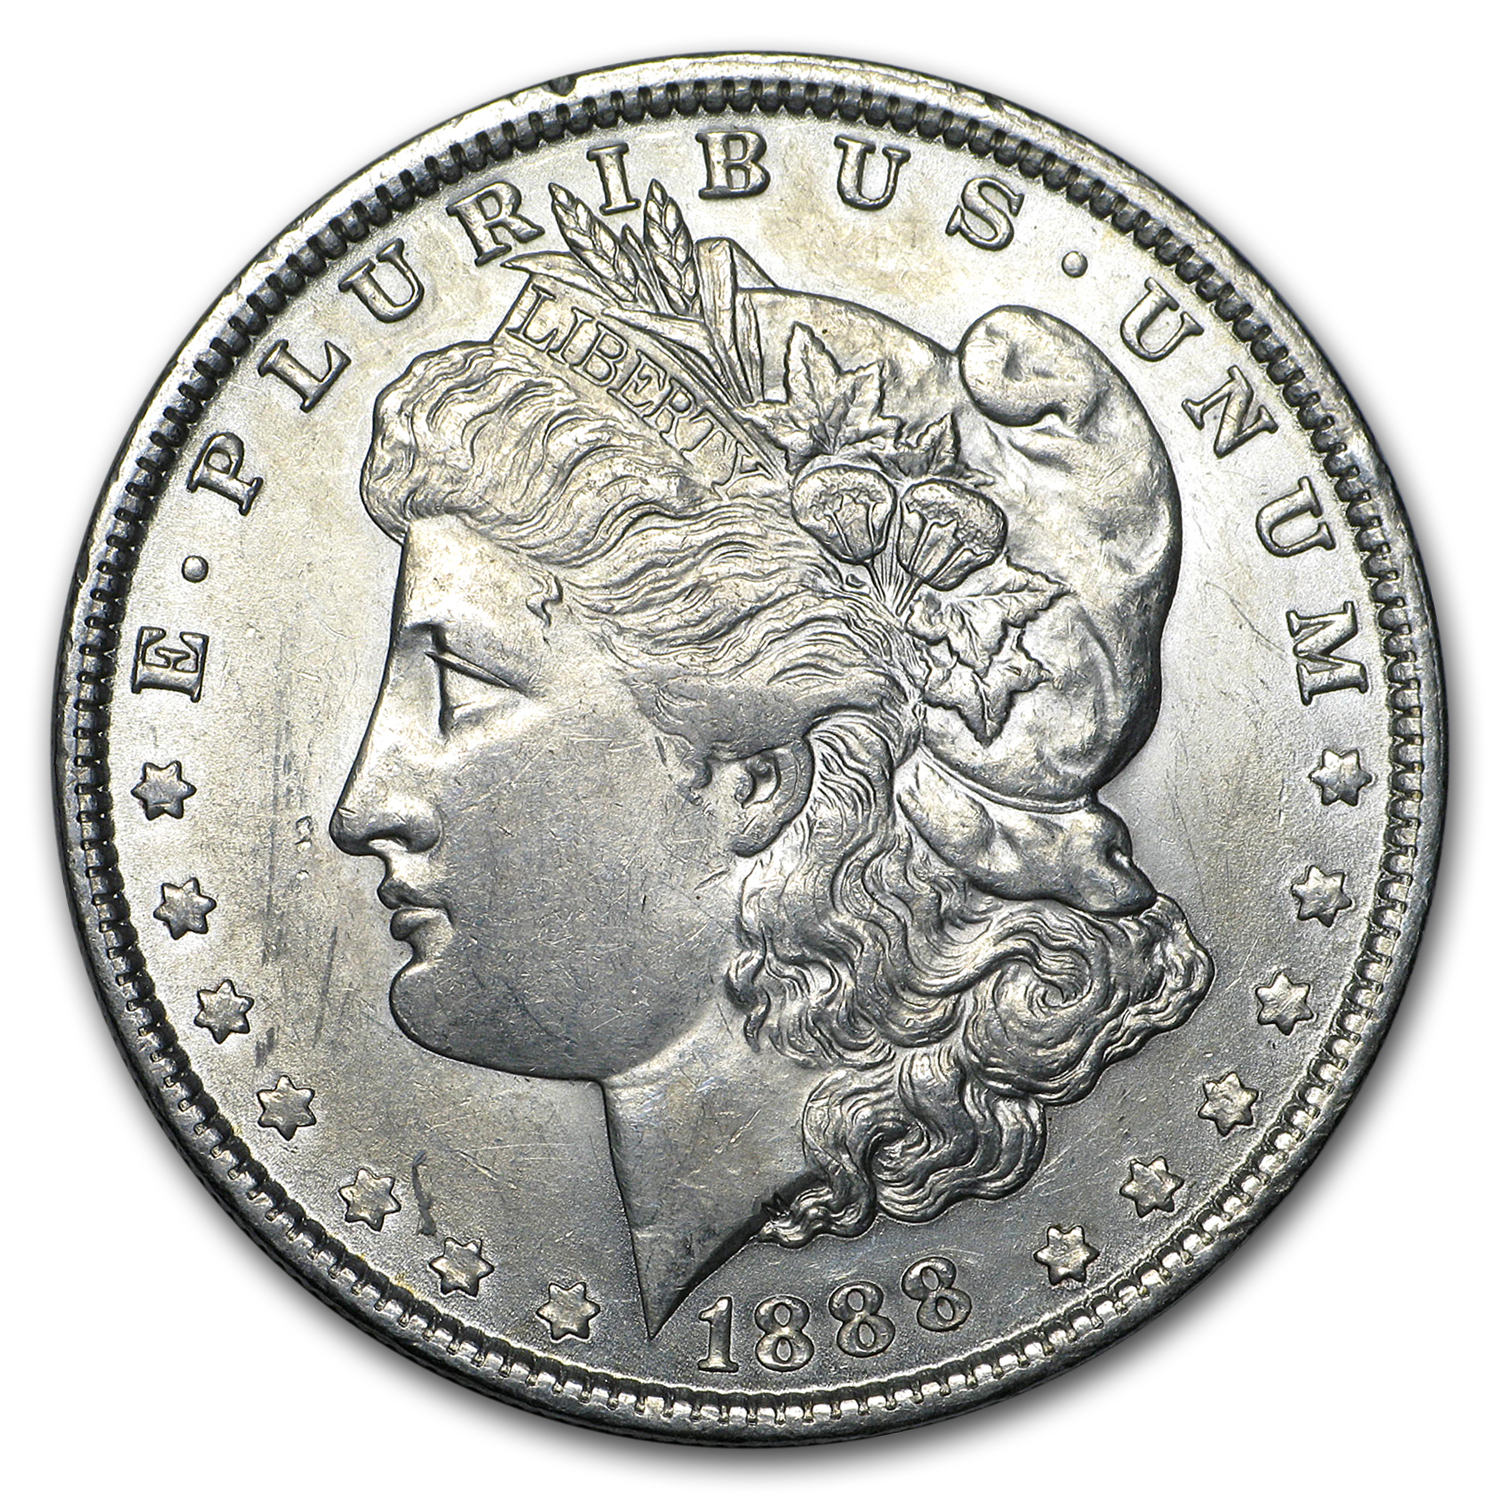 Buy 1888 Morgan Dollar AU